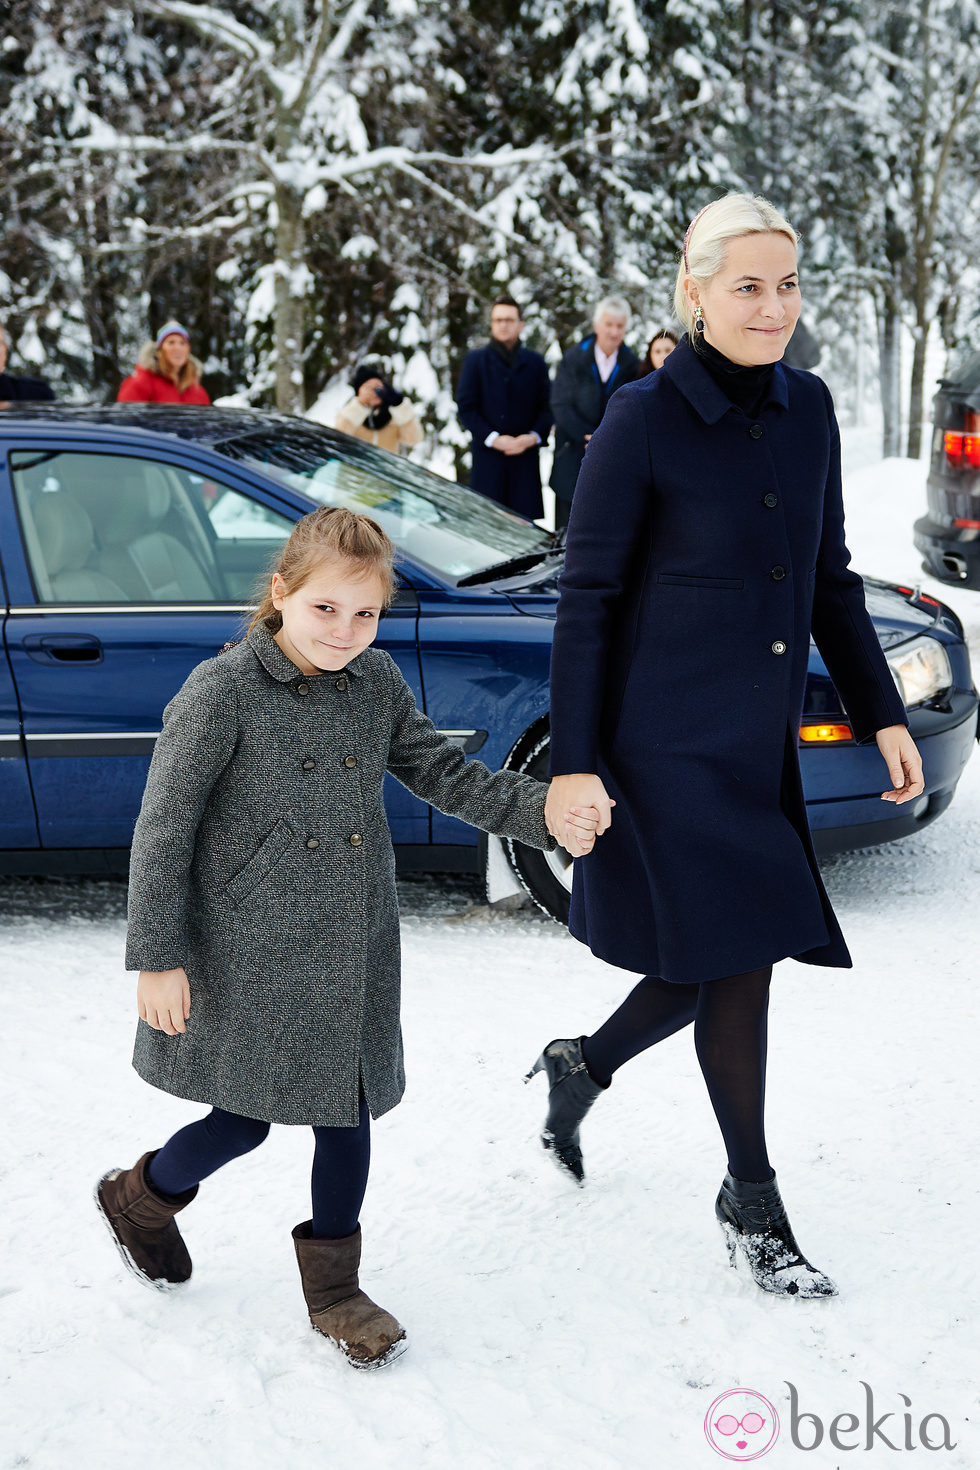 Mette-Marit de Noruega y la Princesa Ingrid Alexandra en la Misa de Navidad